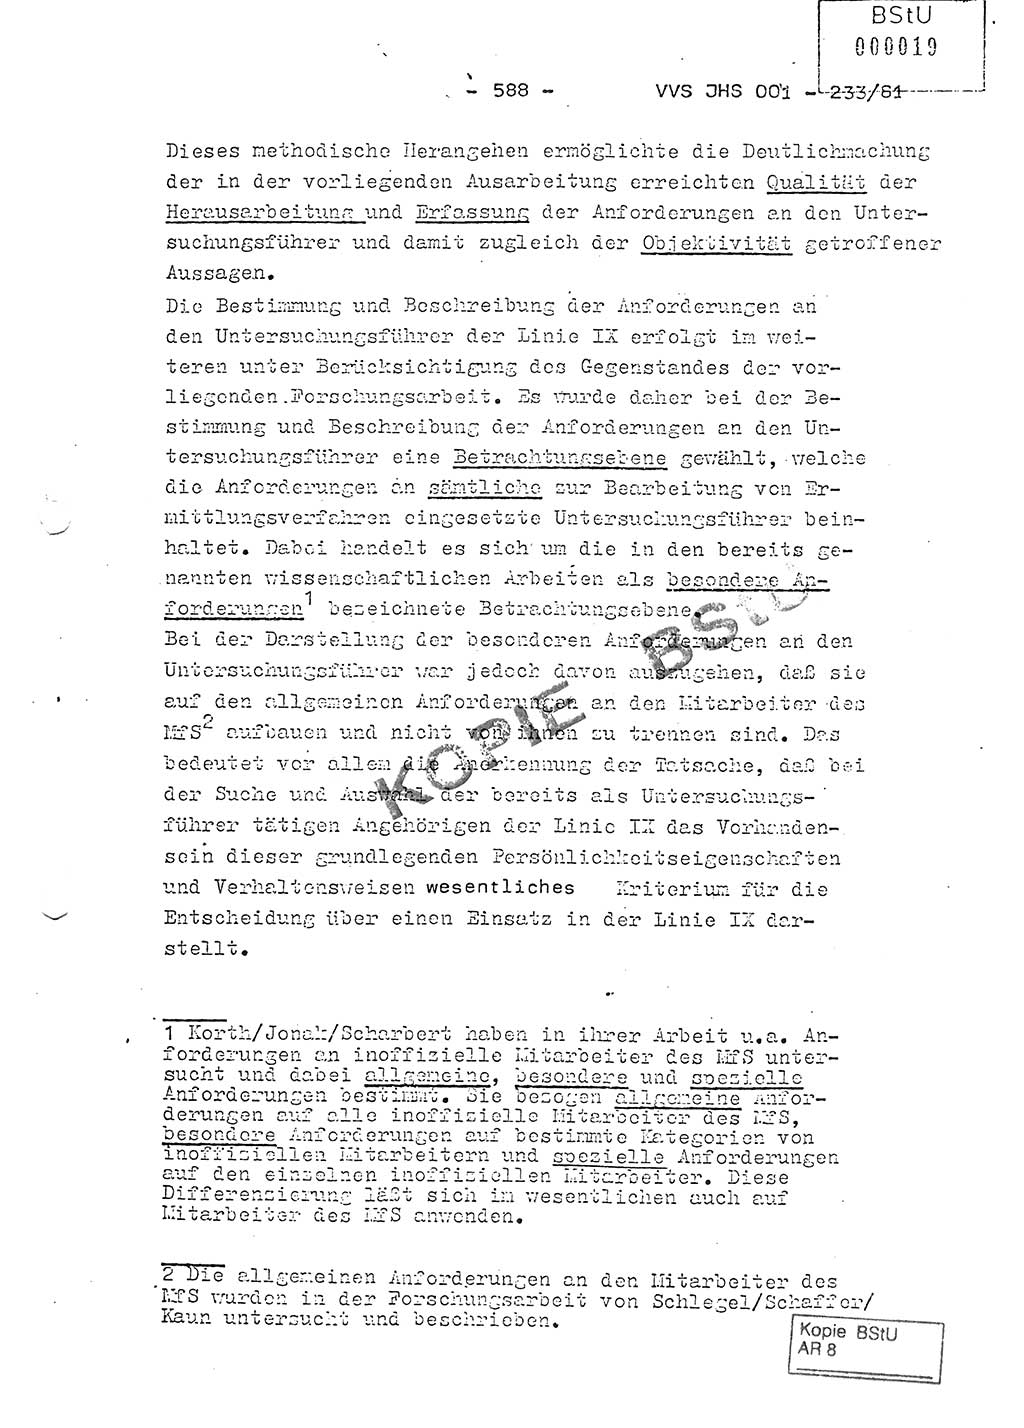 Dissertation Oberstleutnant Horst Zank (JHS), Oberstleutnant Dr. Karl-Heinz Knoblauch (JHS), Oberstleutnant Gustav-Adolf Kowalewski (HA Ⅸ), Oberstleutnant Wolfgang Plötner (HA Ⅸ), Ministerium für Staatssicherheit (MfS) [Deutsche Demokratische Republik (DDR)], Juristische Hochschule (JHS), Vertrauliche Verschlußsache (VVS) o001-233/81, Potsdam 1981, Blatt 588 (Diss. MfS DDR JHS VVS o001-233/81 1981, Bl. 588)